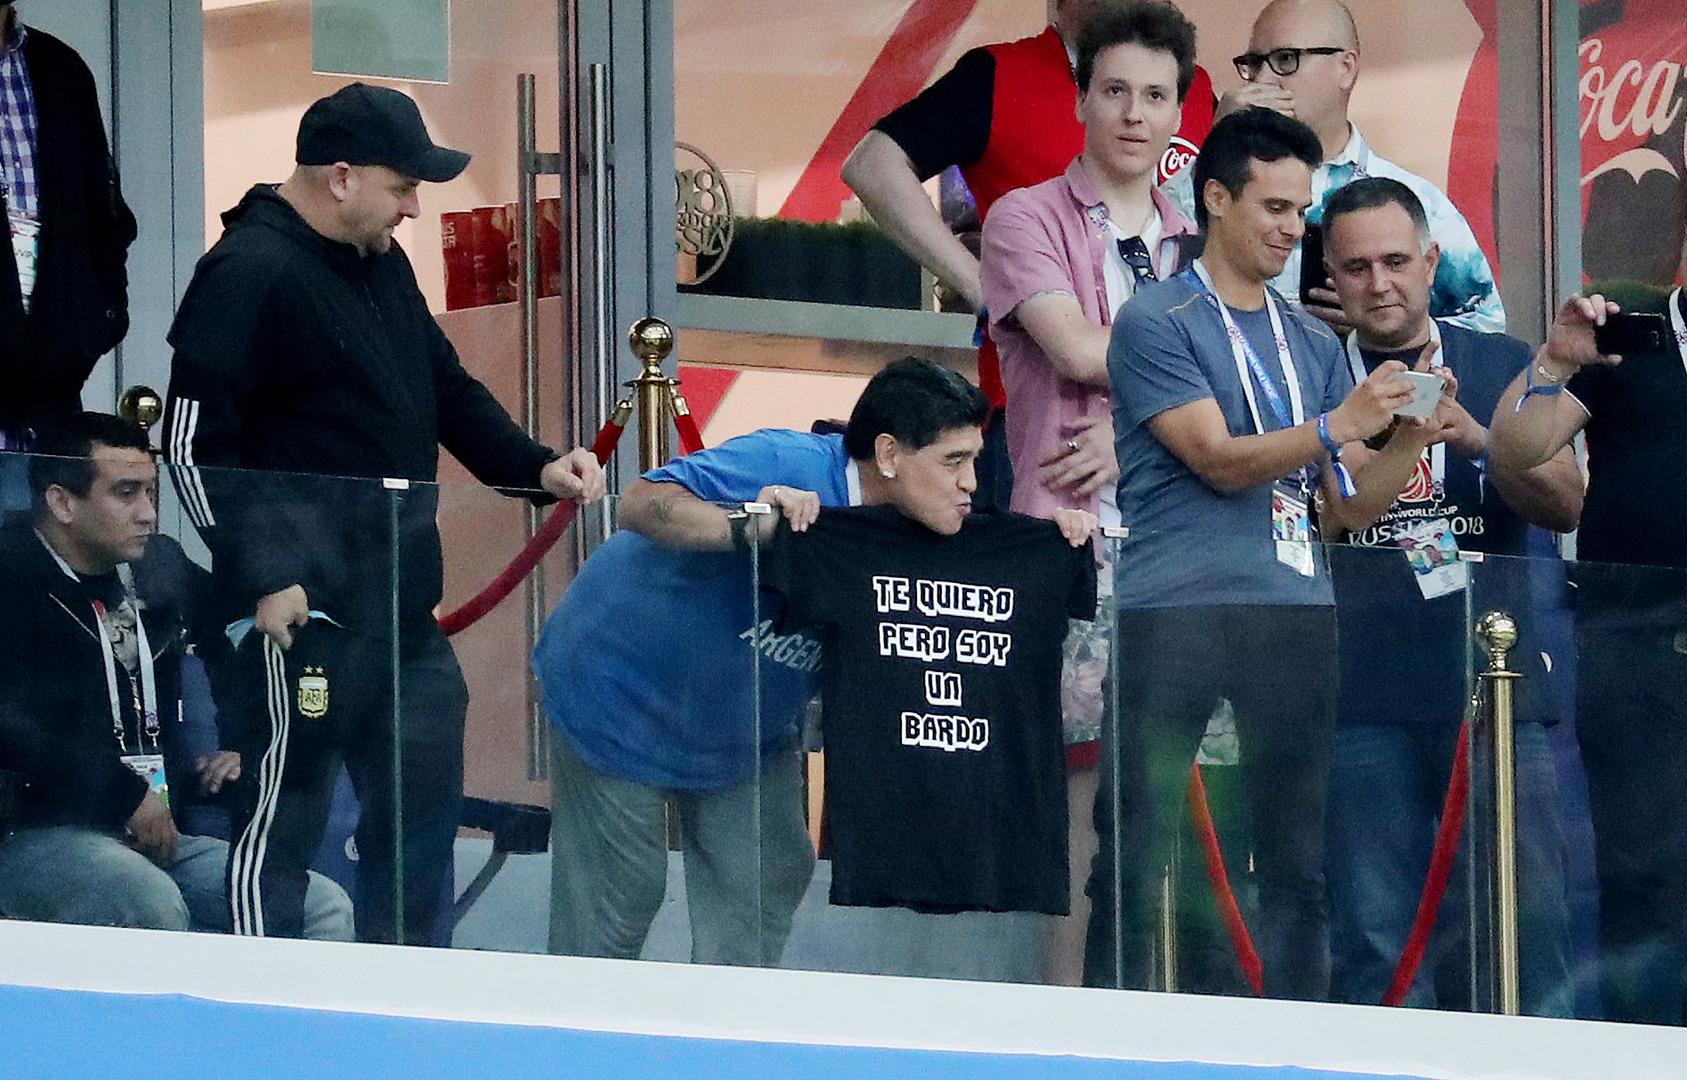 S tribina je legendarni Argentinac uoči utakmice poslao poruku Lionelu Messiju.

